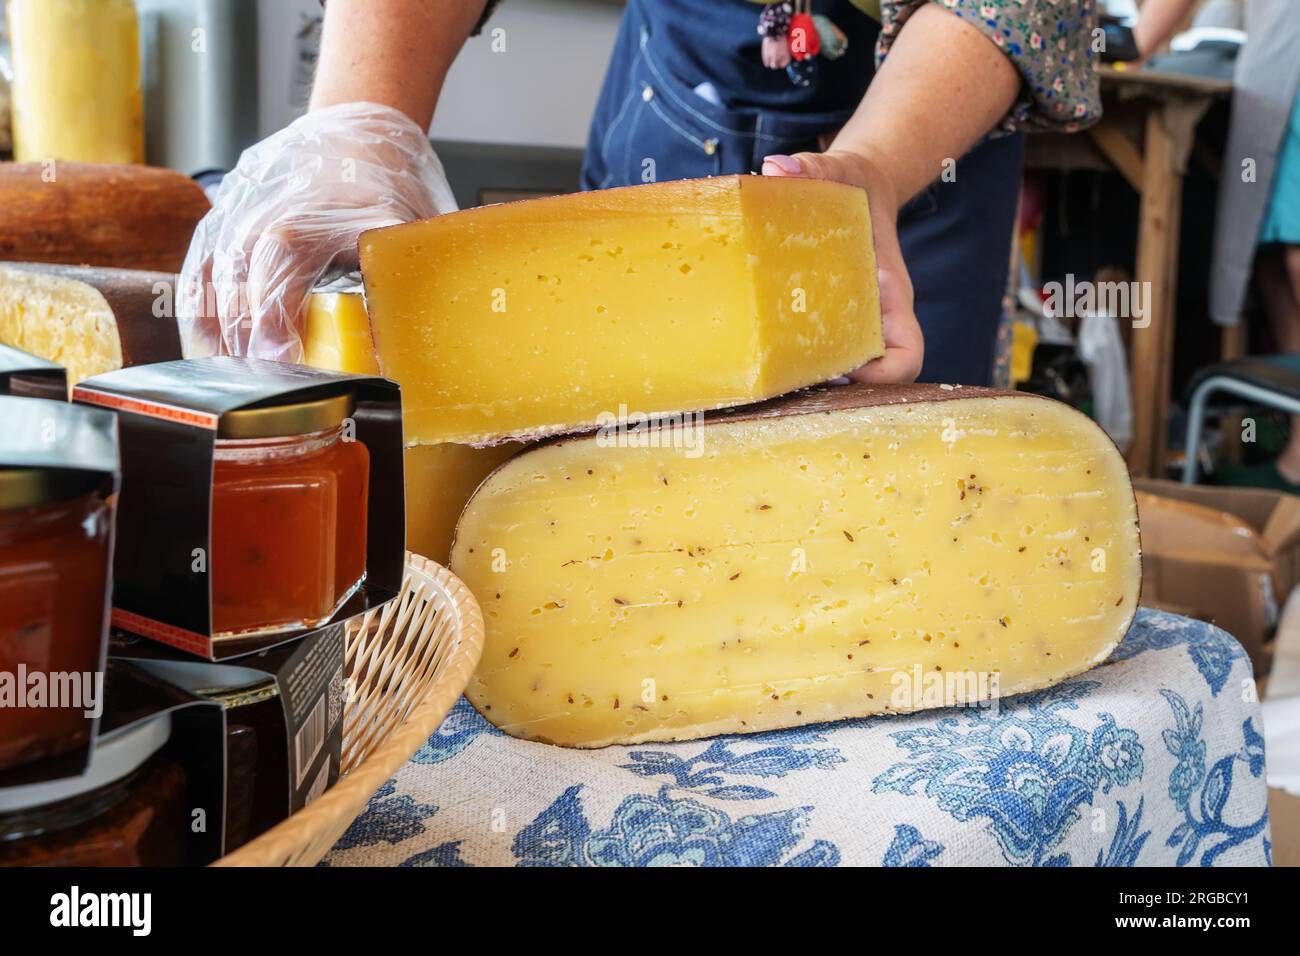 Russischer Bauernkäse vom Hersteller. Auswahl an leckerem Käse auf der Theke. Stockfoto